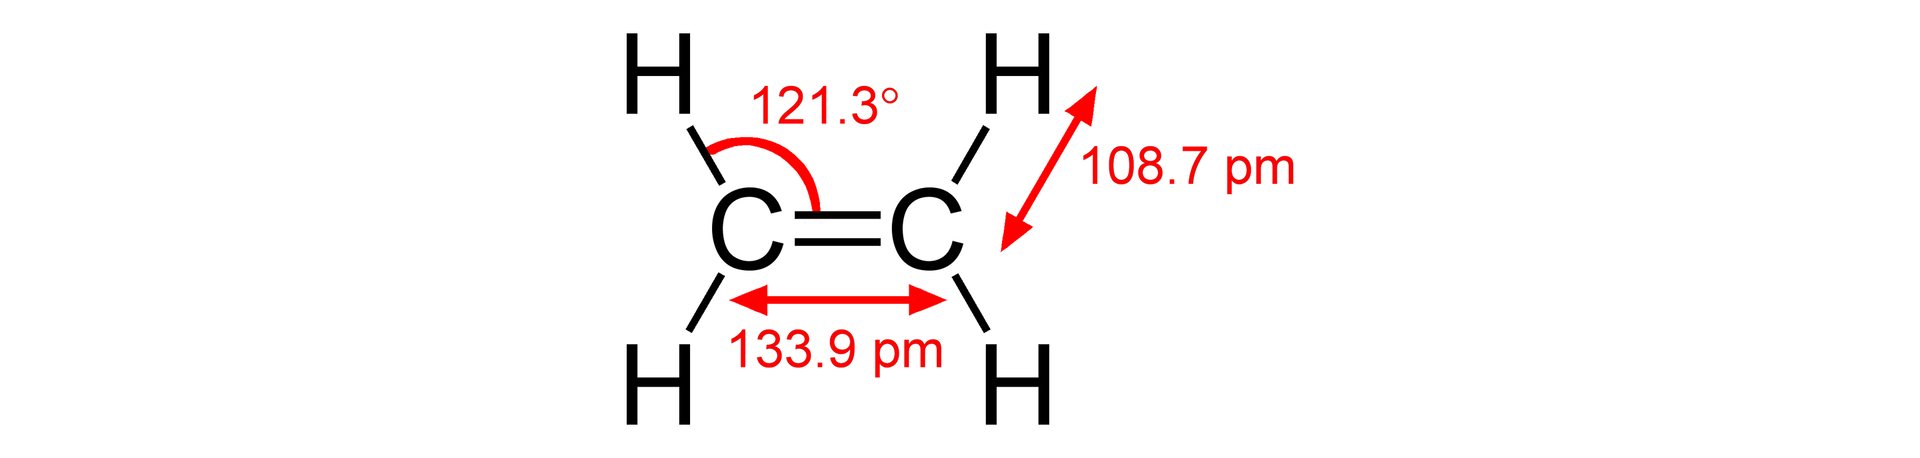 Wzór przedstawia dwa atomy węgla połączone wiązaniem podwójnym. Każdy atom węgla łączy się na górze i na dole z dwoma atomami wodoru. Długość wiązania między atomami węgla wynosi 133,9 pikometra, a pomiędzy atomami węgla i wodoru 108,7 pikometra. Kąt pomiędzy wiązaniem podwójnym a wiązaniem pomiędzy atomami węgla i wodoru wynosi 121,3 stopnia.    